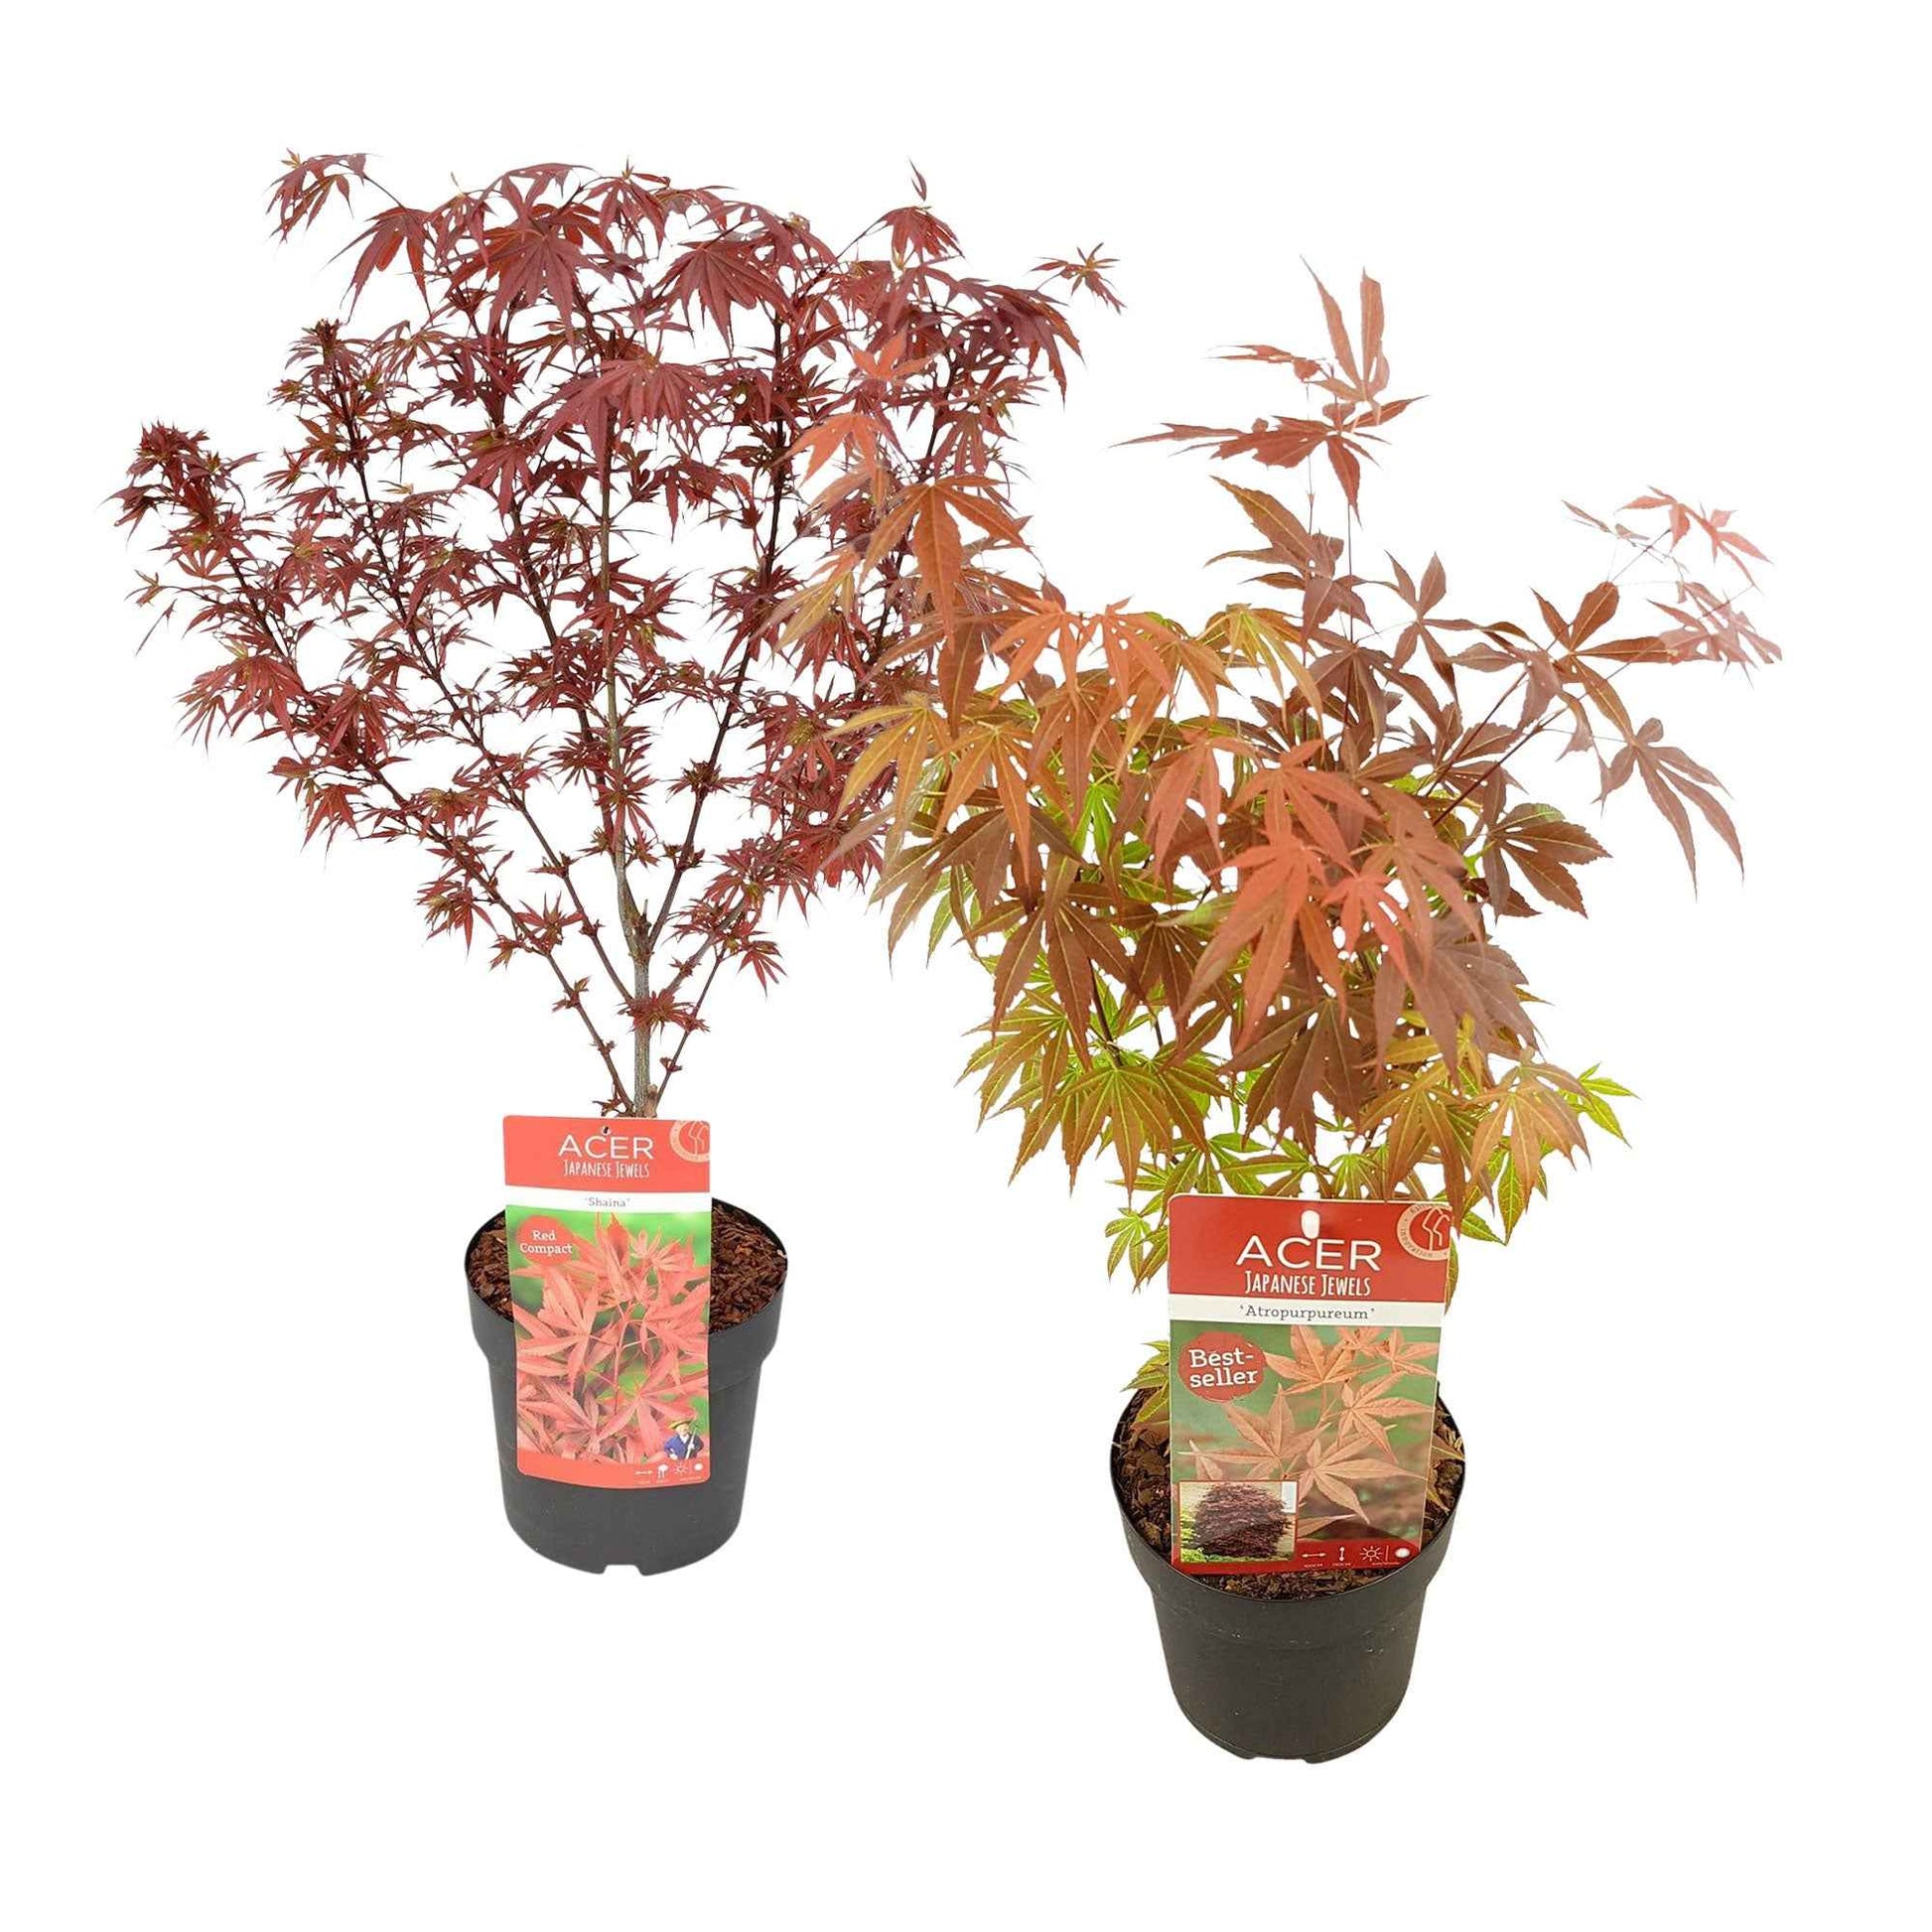 2x Érable du Japon Acer 'Atropurpureum' + 'Shaina' rouge - Arbustes fleuris